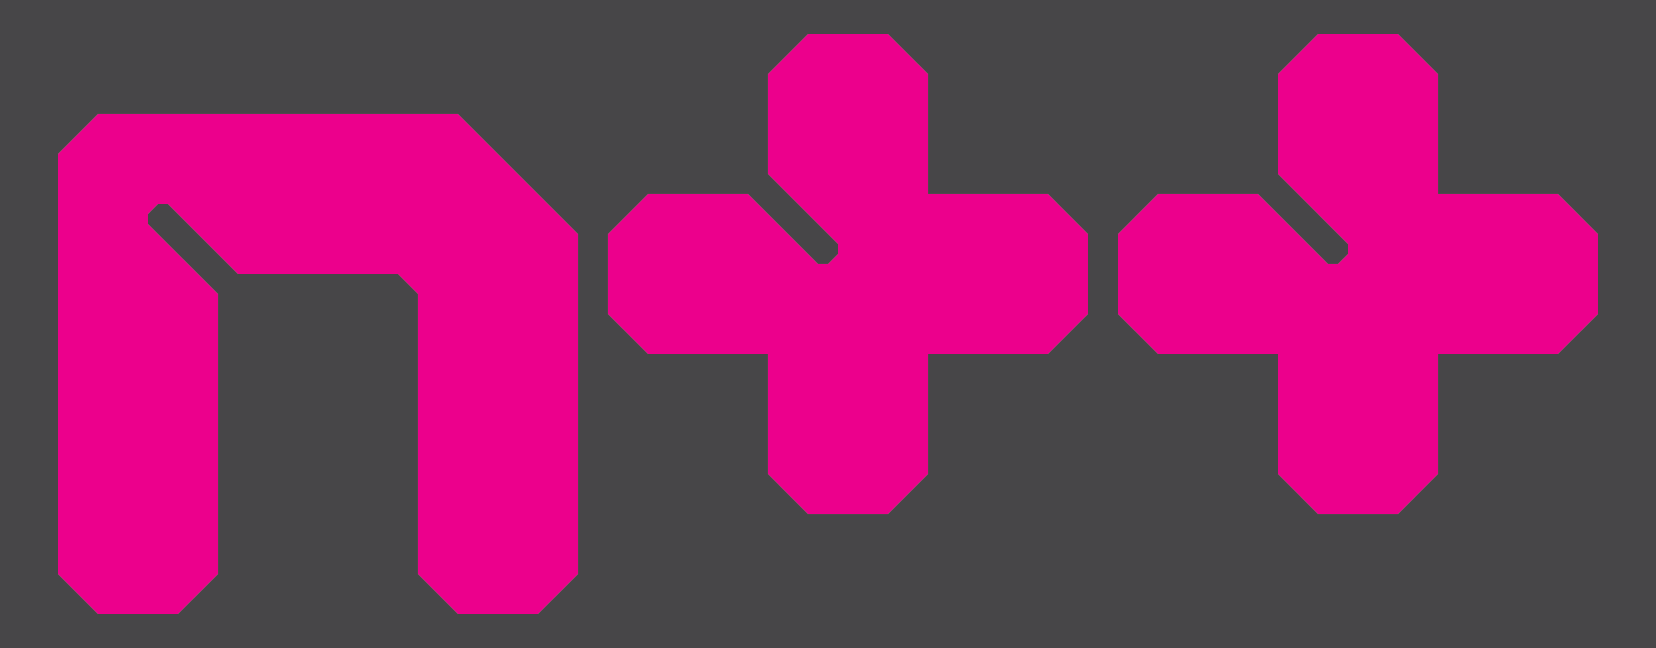 pink_logo.png